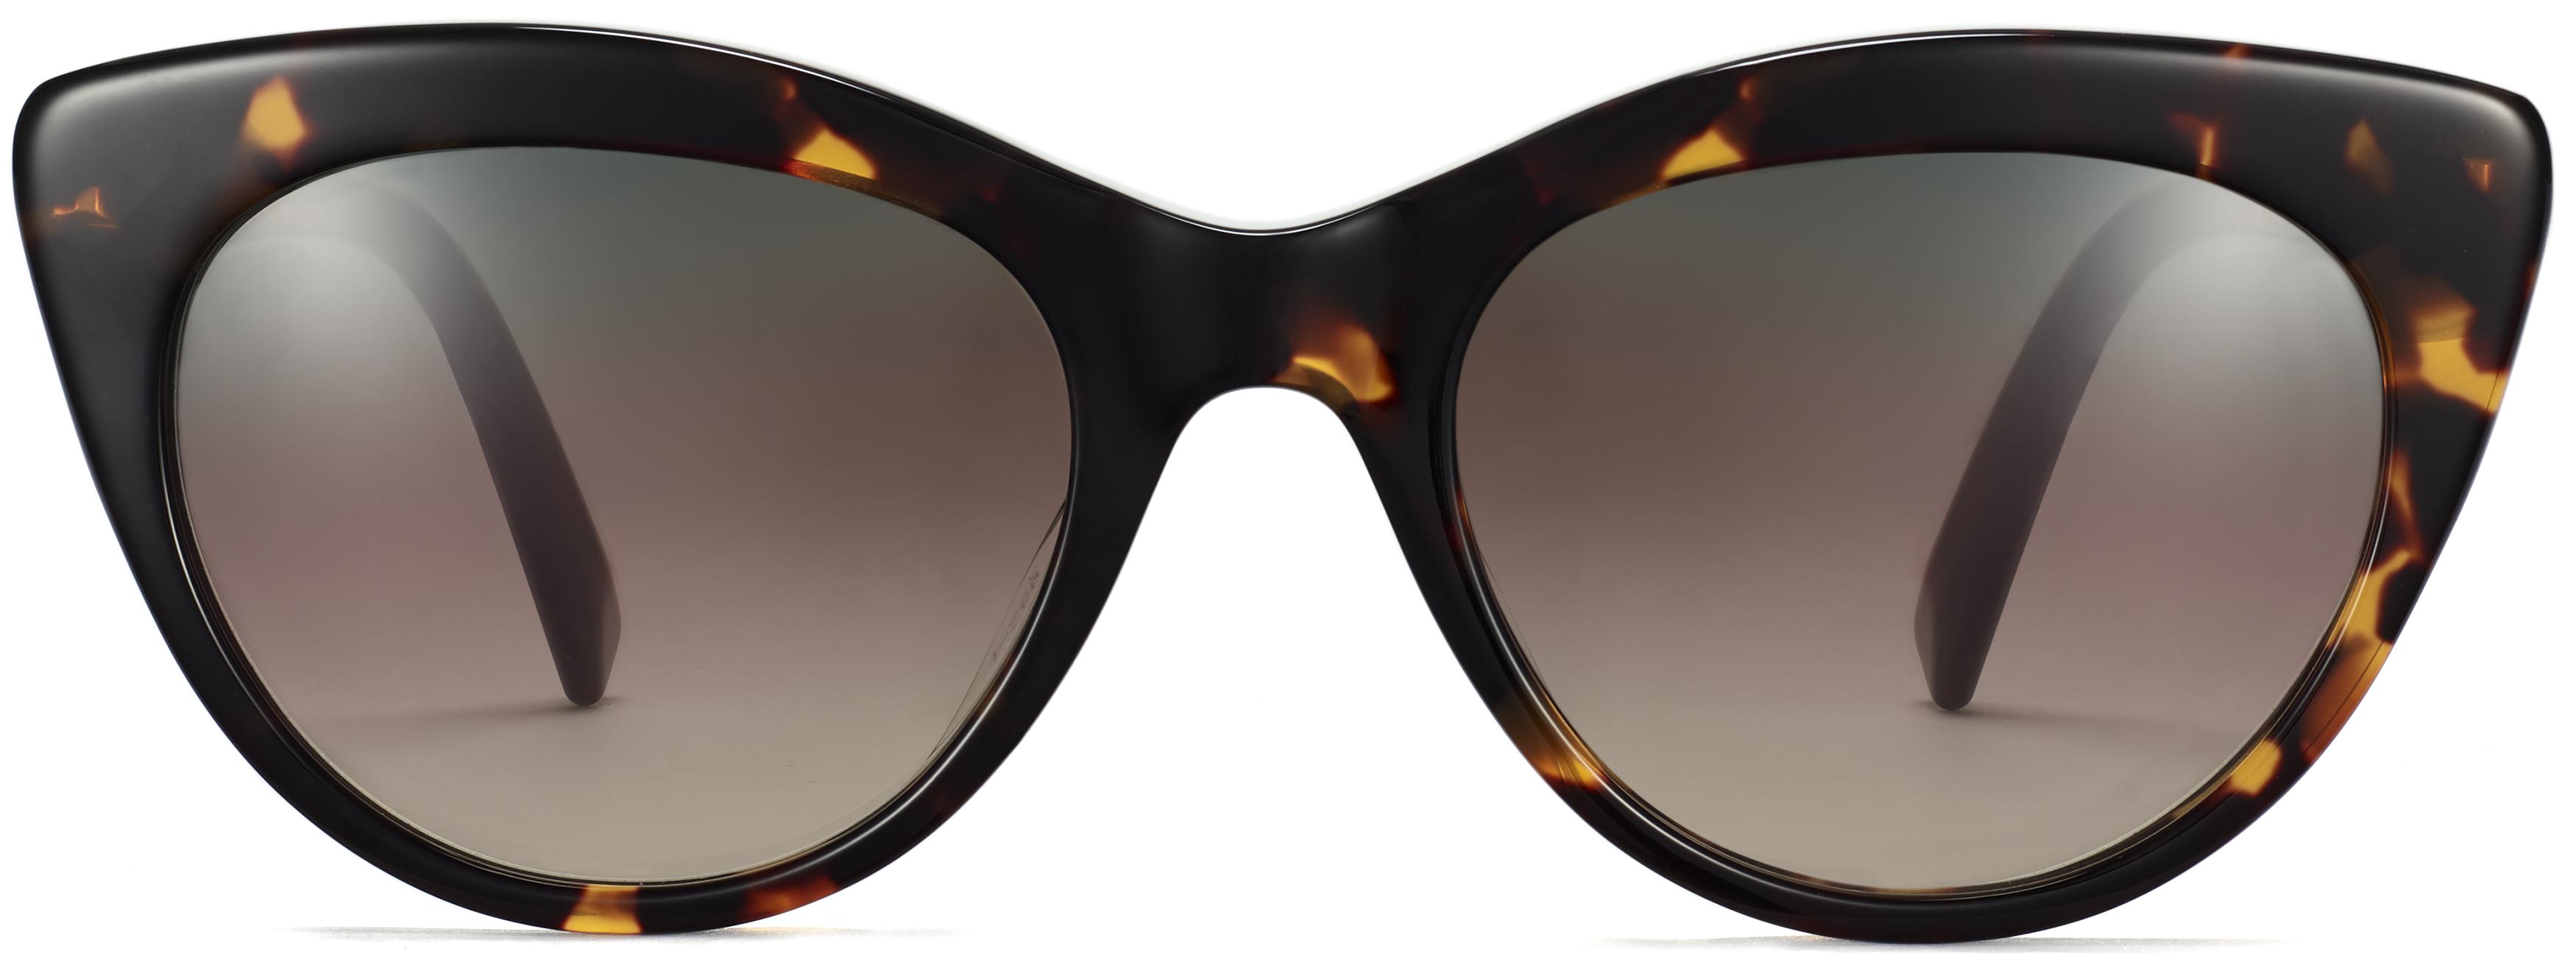 Tilley Low Bridge Fit Sunglasses in Cognac Tortoise | Warby Parker